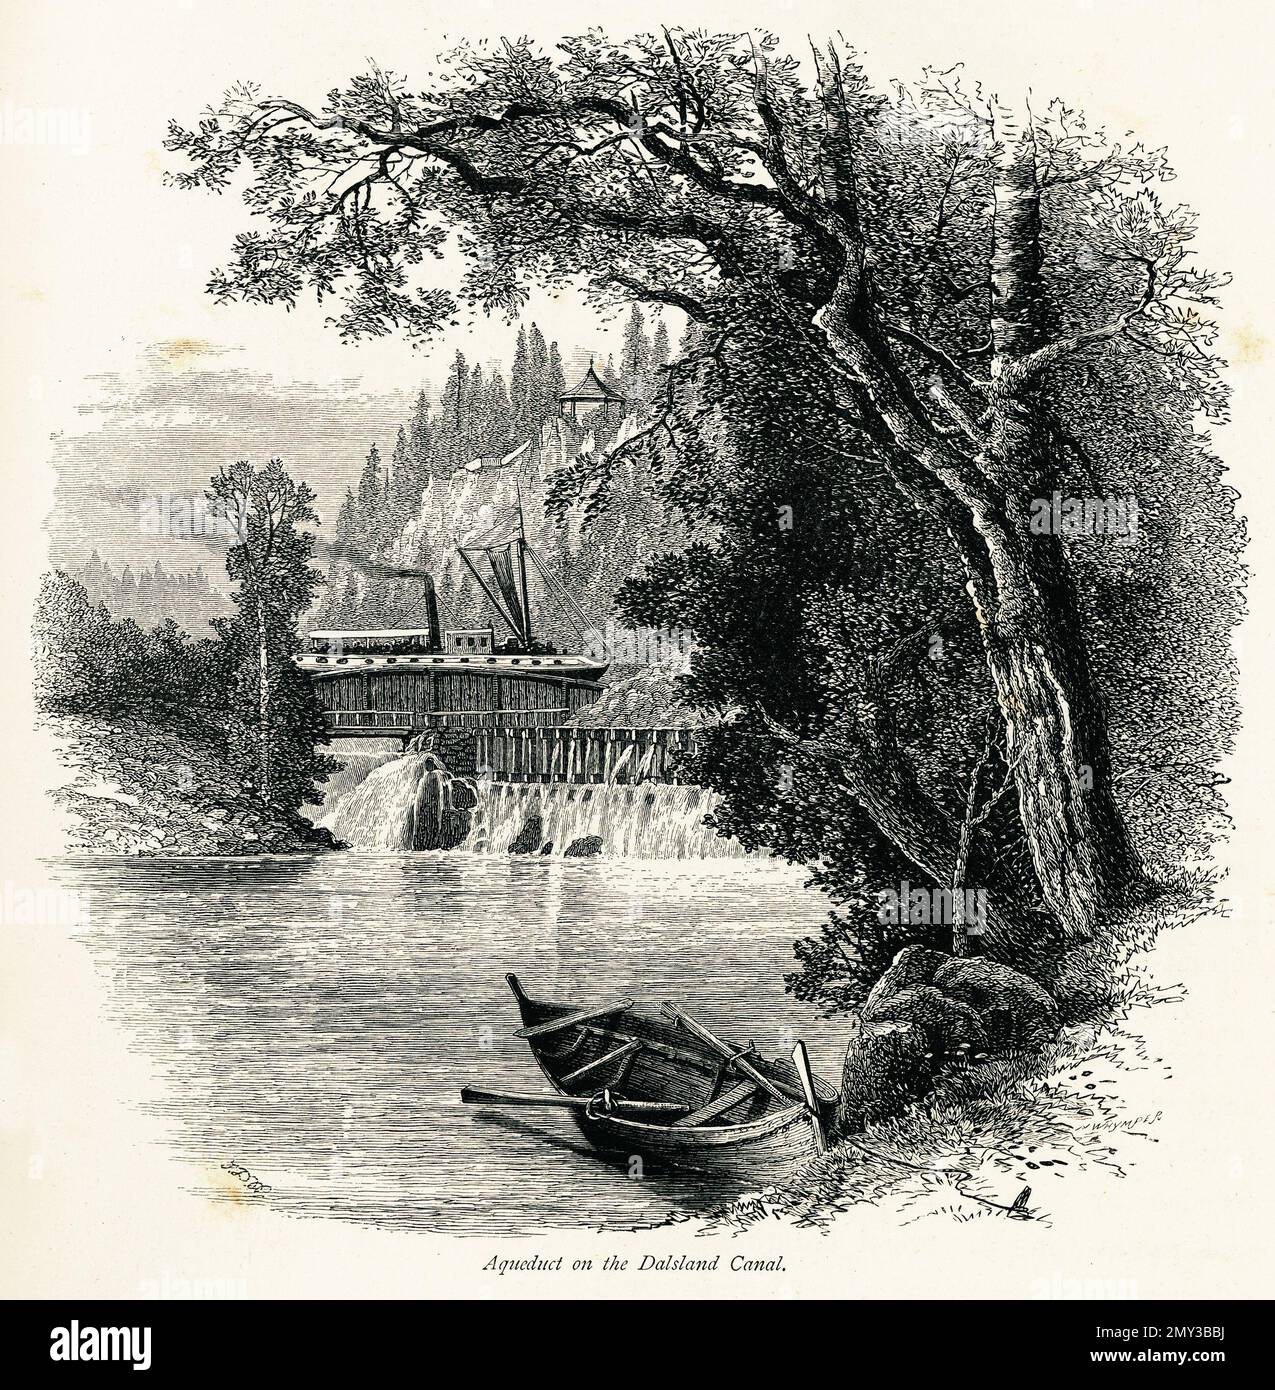 Antica incisione dell'acquedotto di Haverud sul canale di Dalsland, Svezia. Illustrazione pubblicata in picturesque Europe, Vol. V (Cassell & Company, Limi Foto Stock